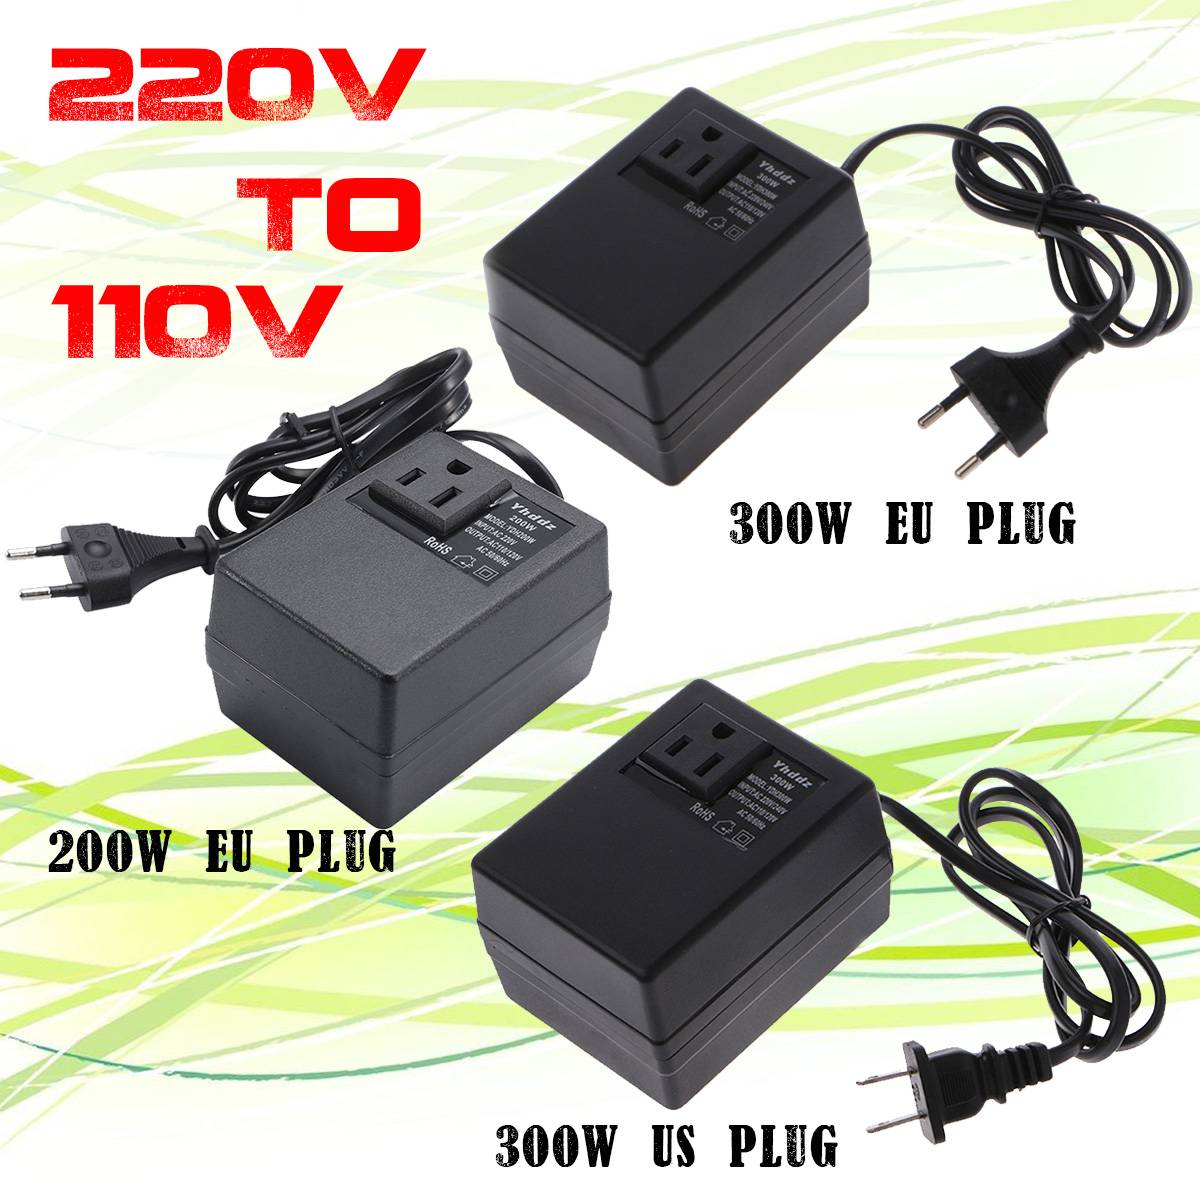 200W 220V to 110V Voltage Step Down Converter Transformer EU Plug Travel Adapter